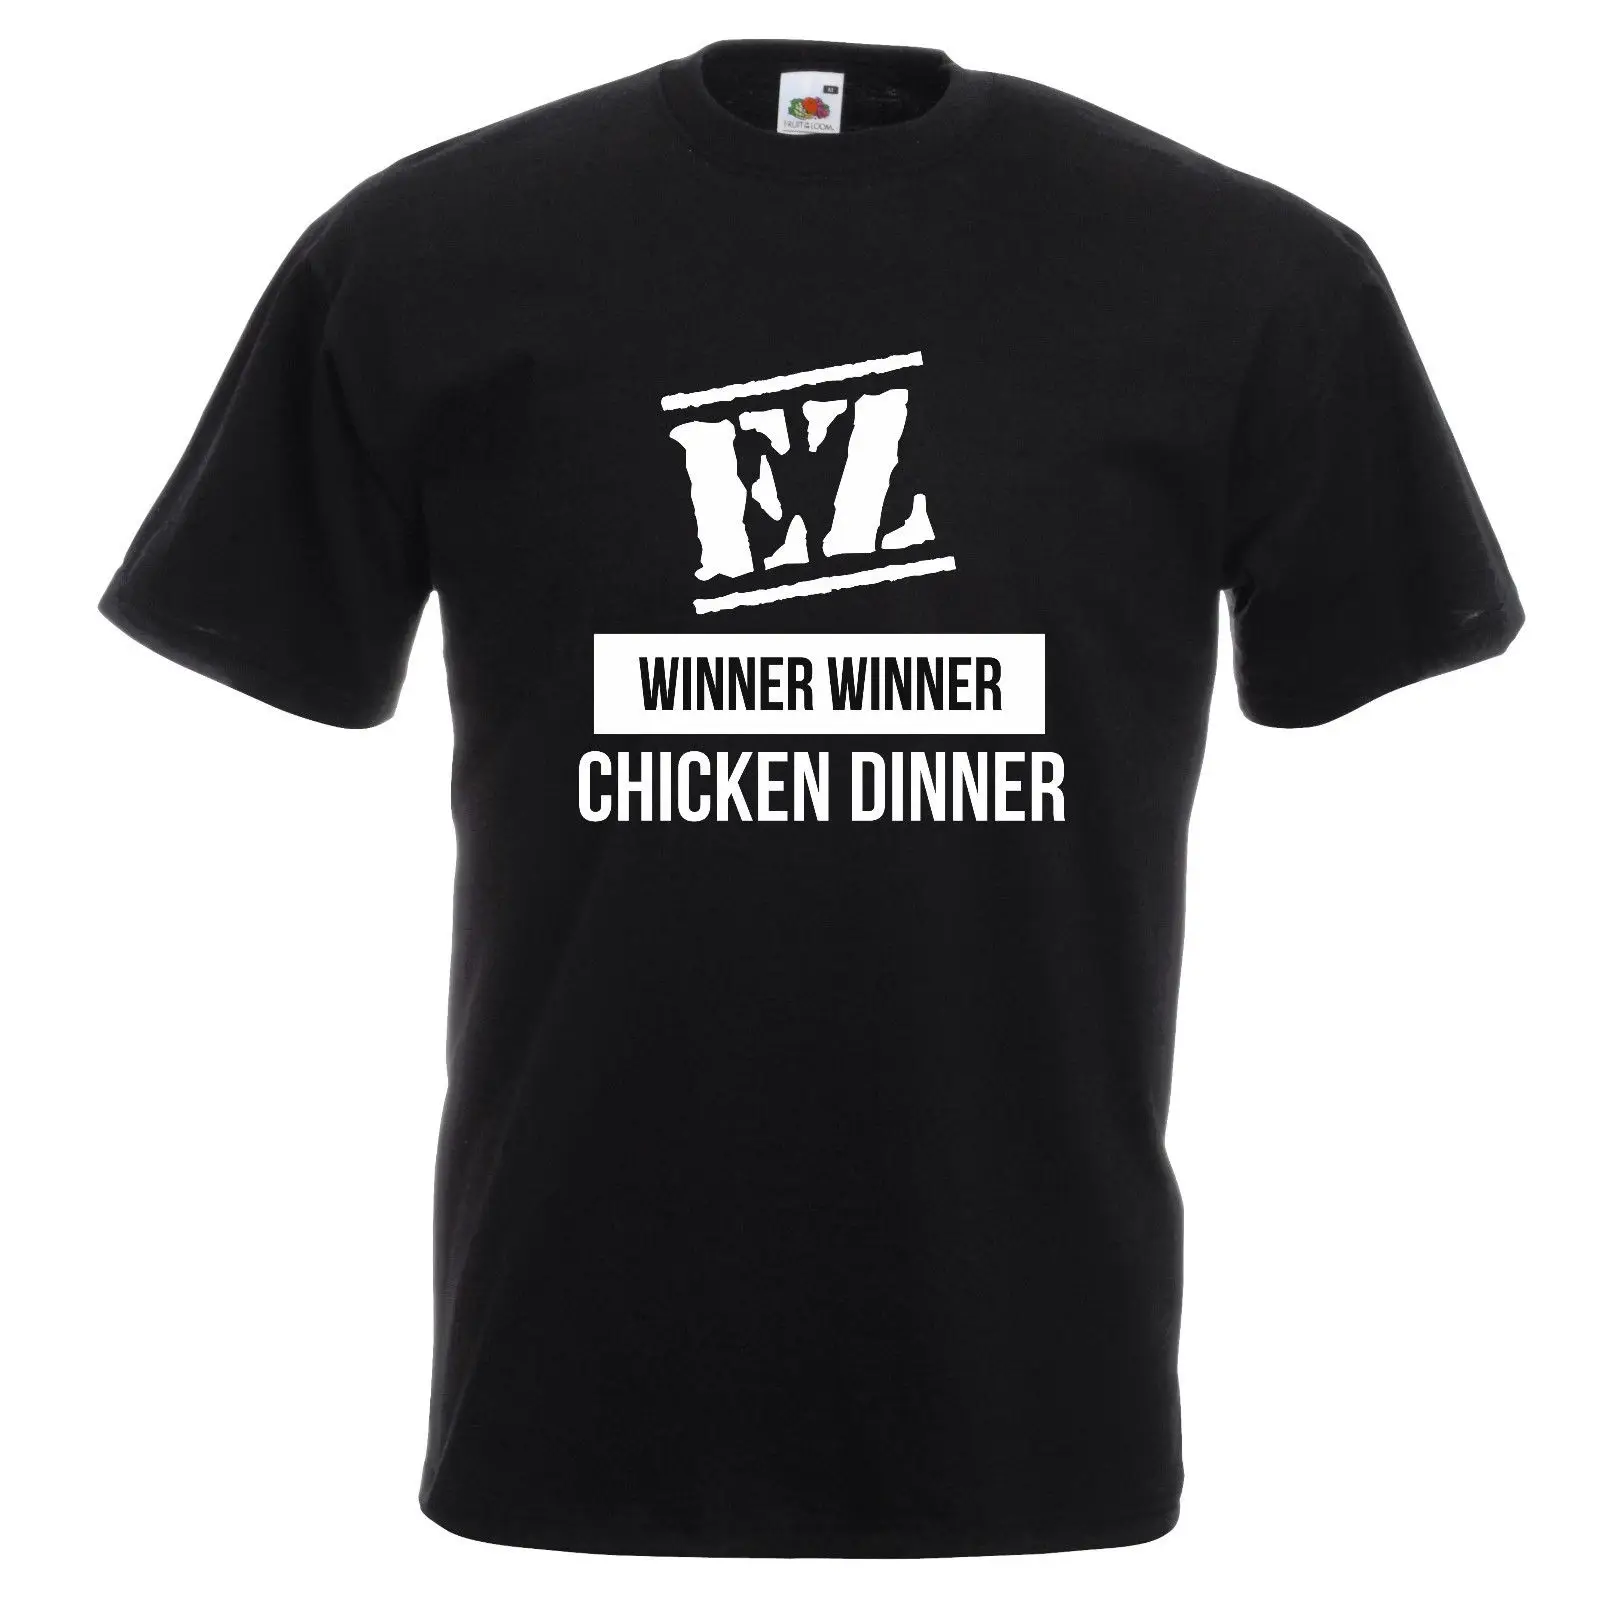 18.99US $ |EZ Meme PUBG Winner Winner Chicken Dinner Printed T Shirt Easy V...